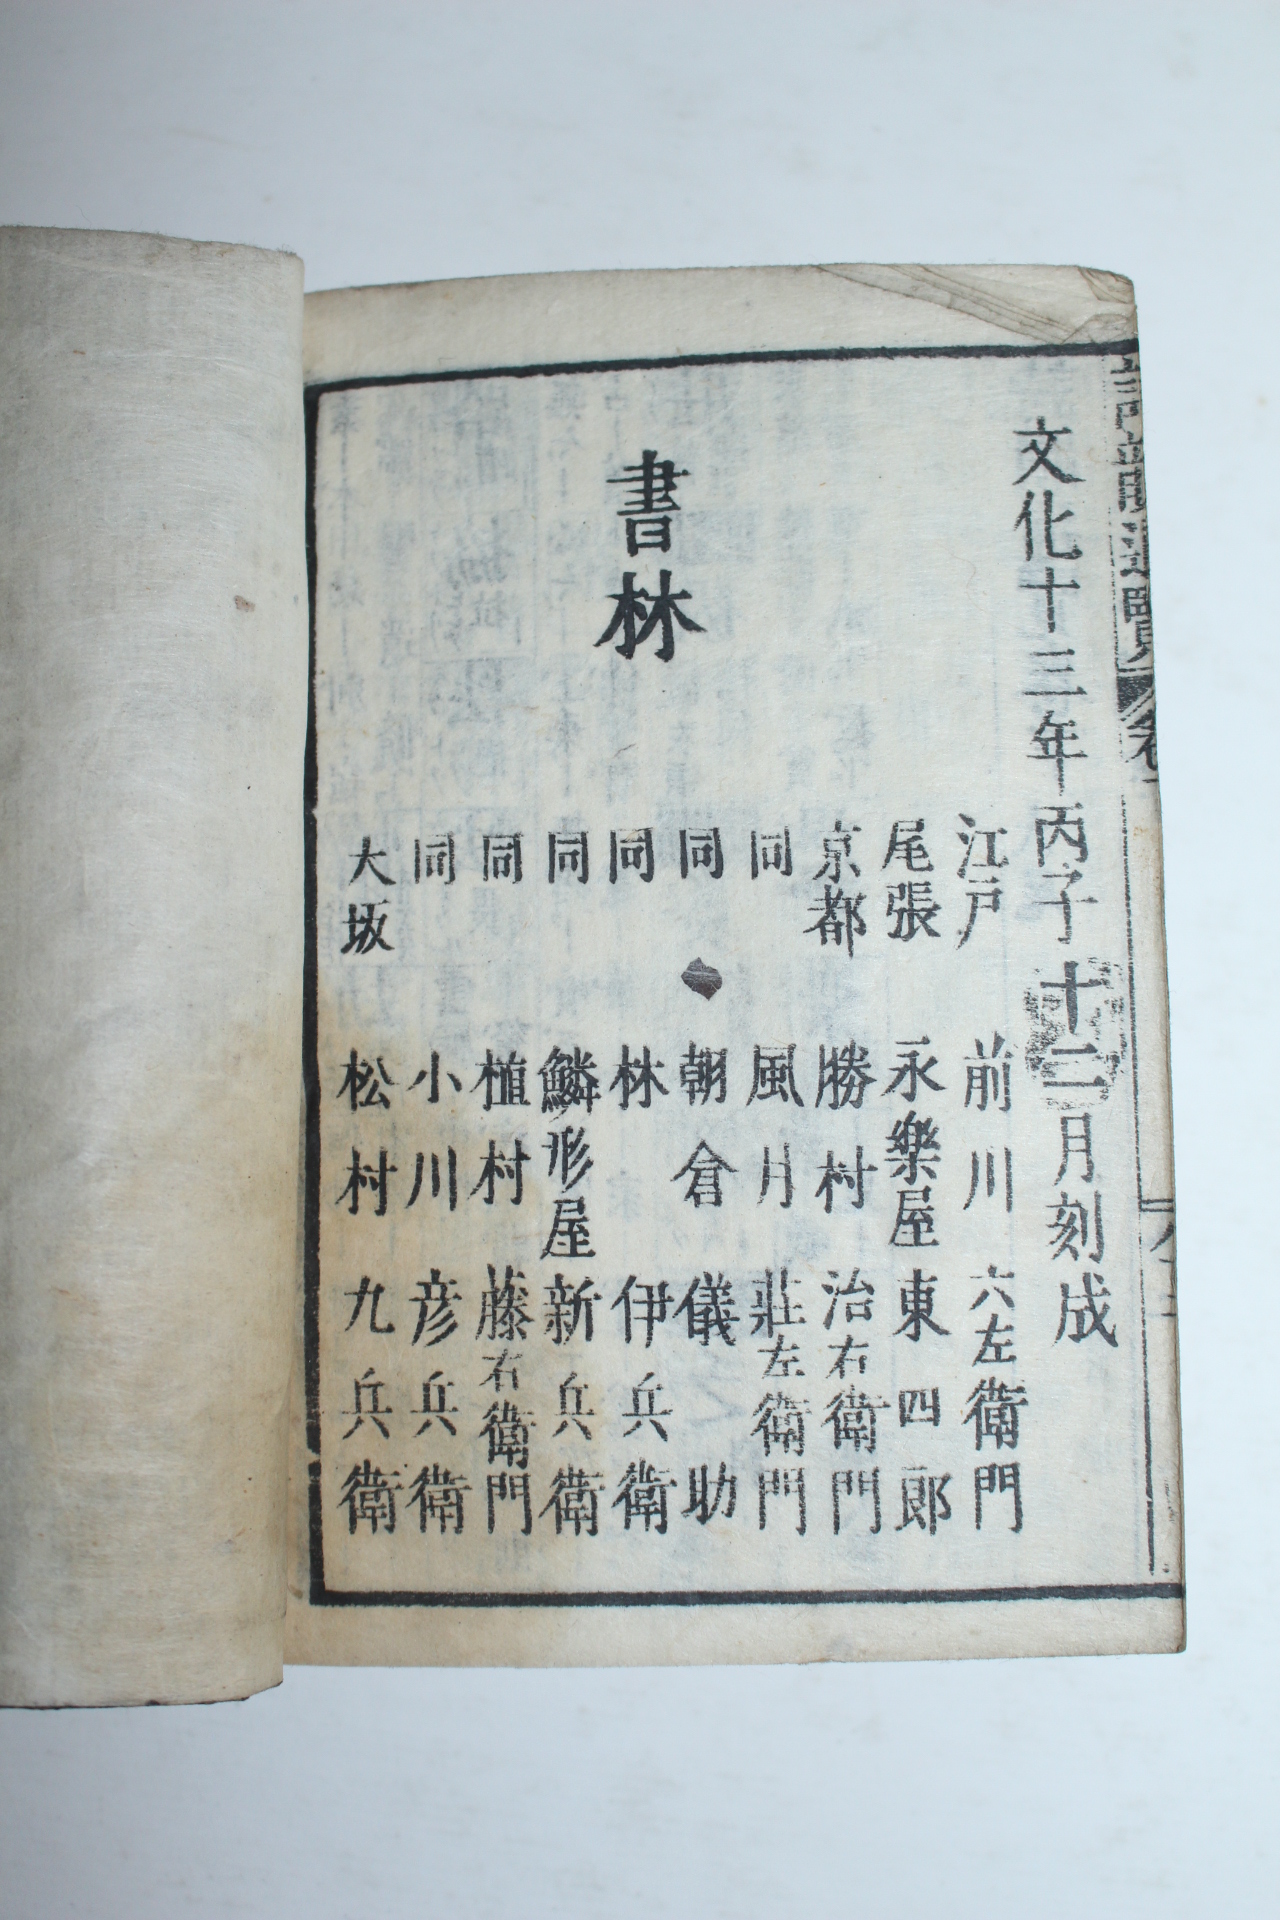 1817년(文化13年) 일본목판본 당송시운통람(唐宋詩韻通覽) 1책완질